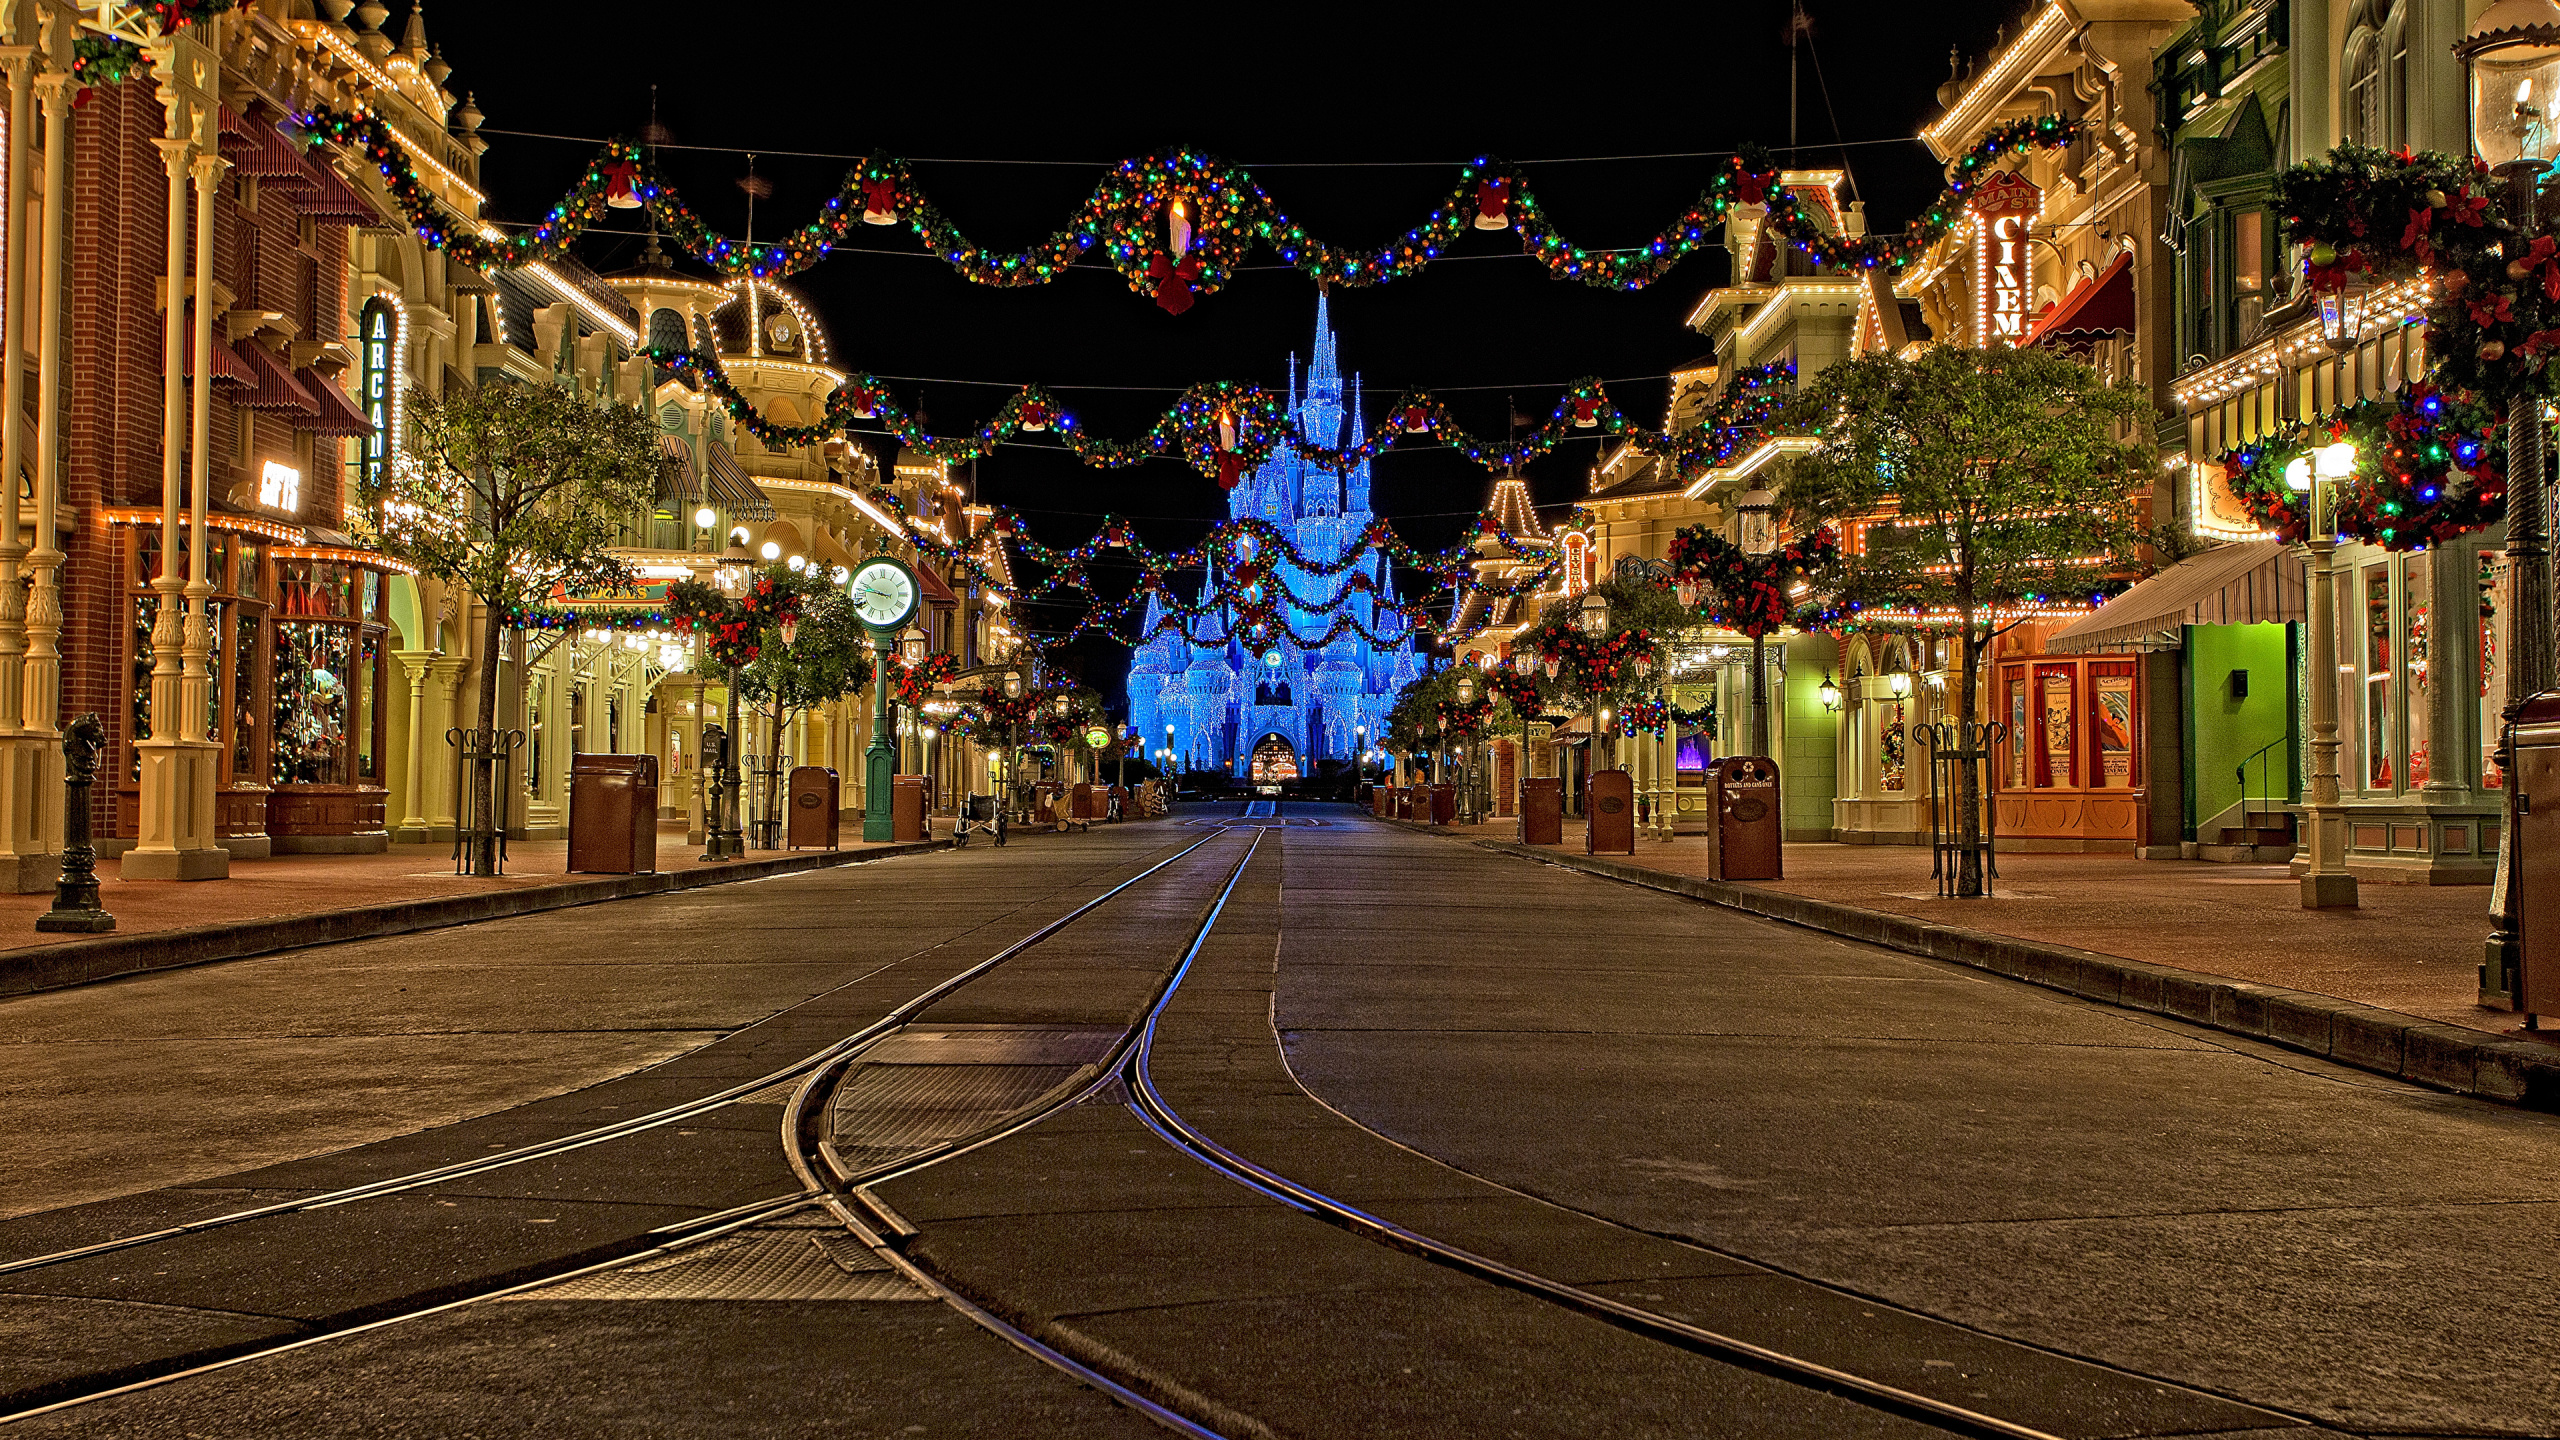 Cinderella Castle, The Walt Disney Company, Nacht, Weihnachtsbeleuchtung, Licht. Wallpaper in 2560x1440 Resolution